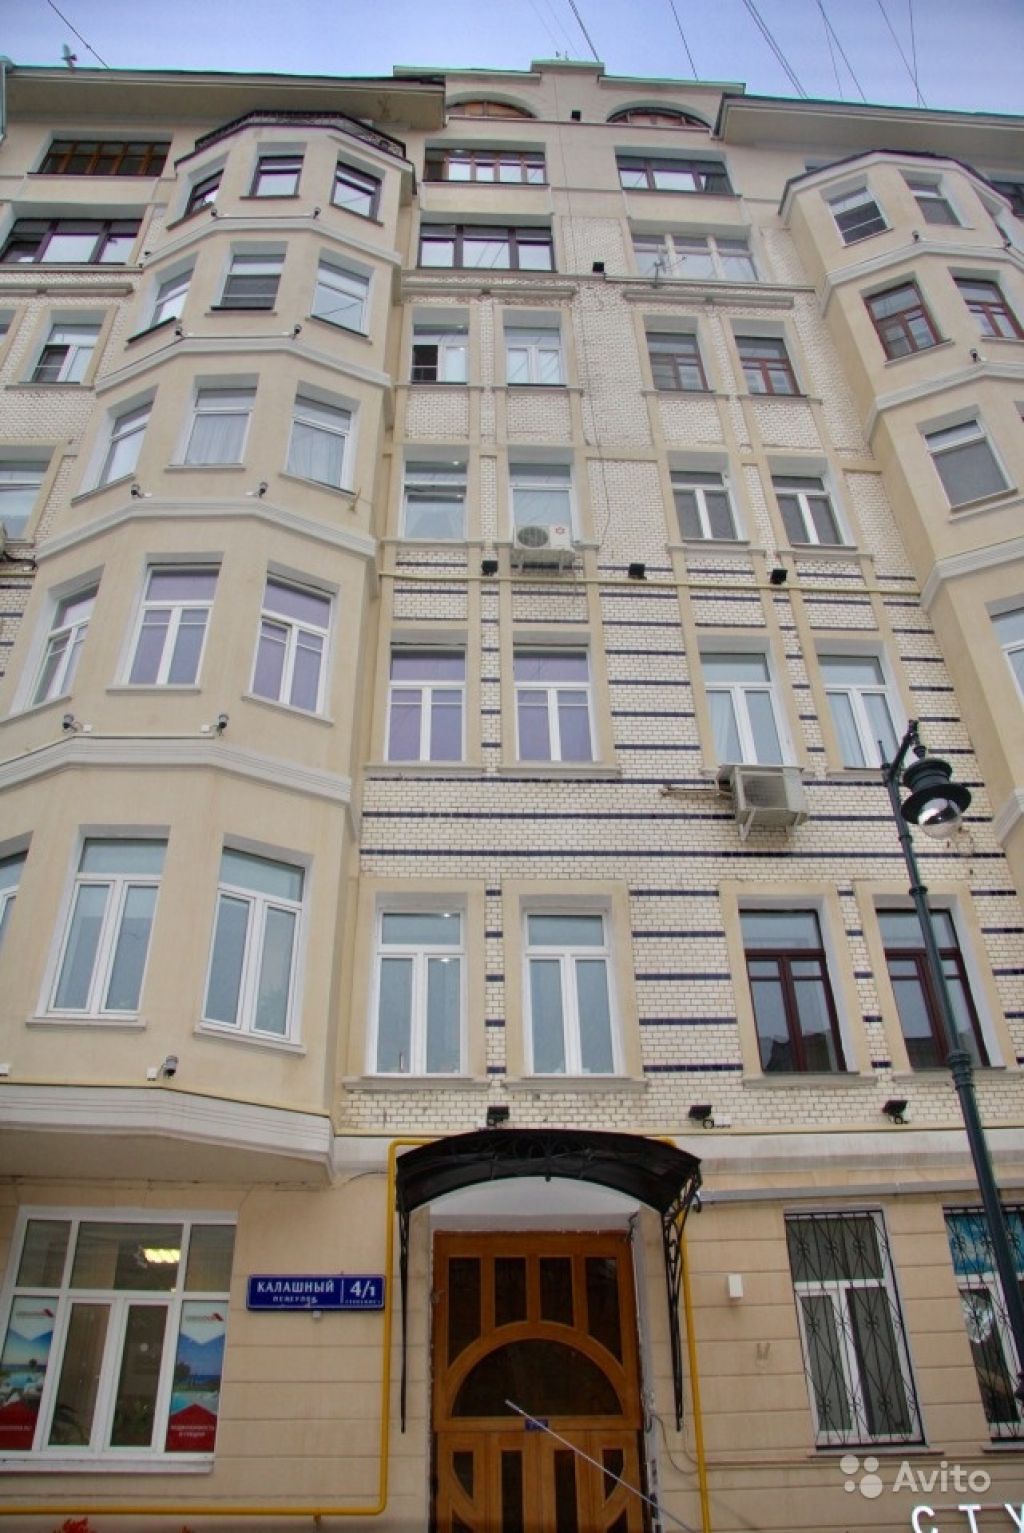 Продам квартиру 5-к квартира 373.5 м² на 7 этаже 7-этажного кирпичного дома в Москве. Фото 1